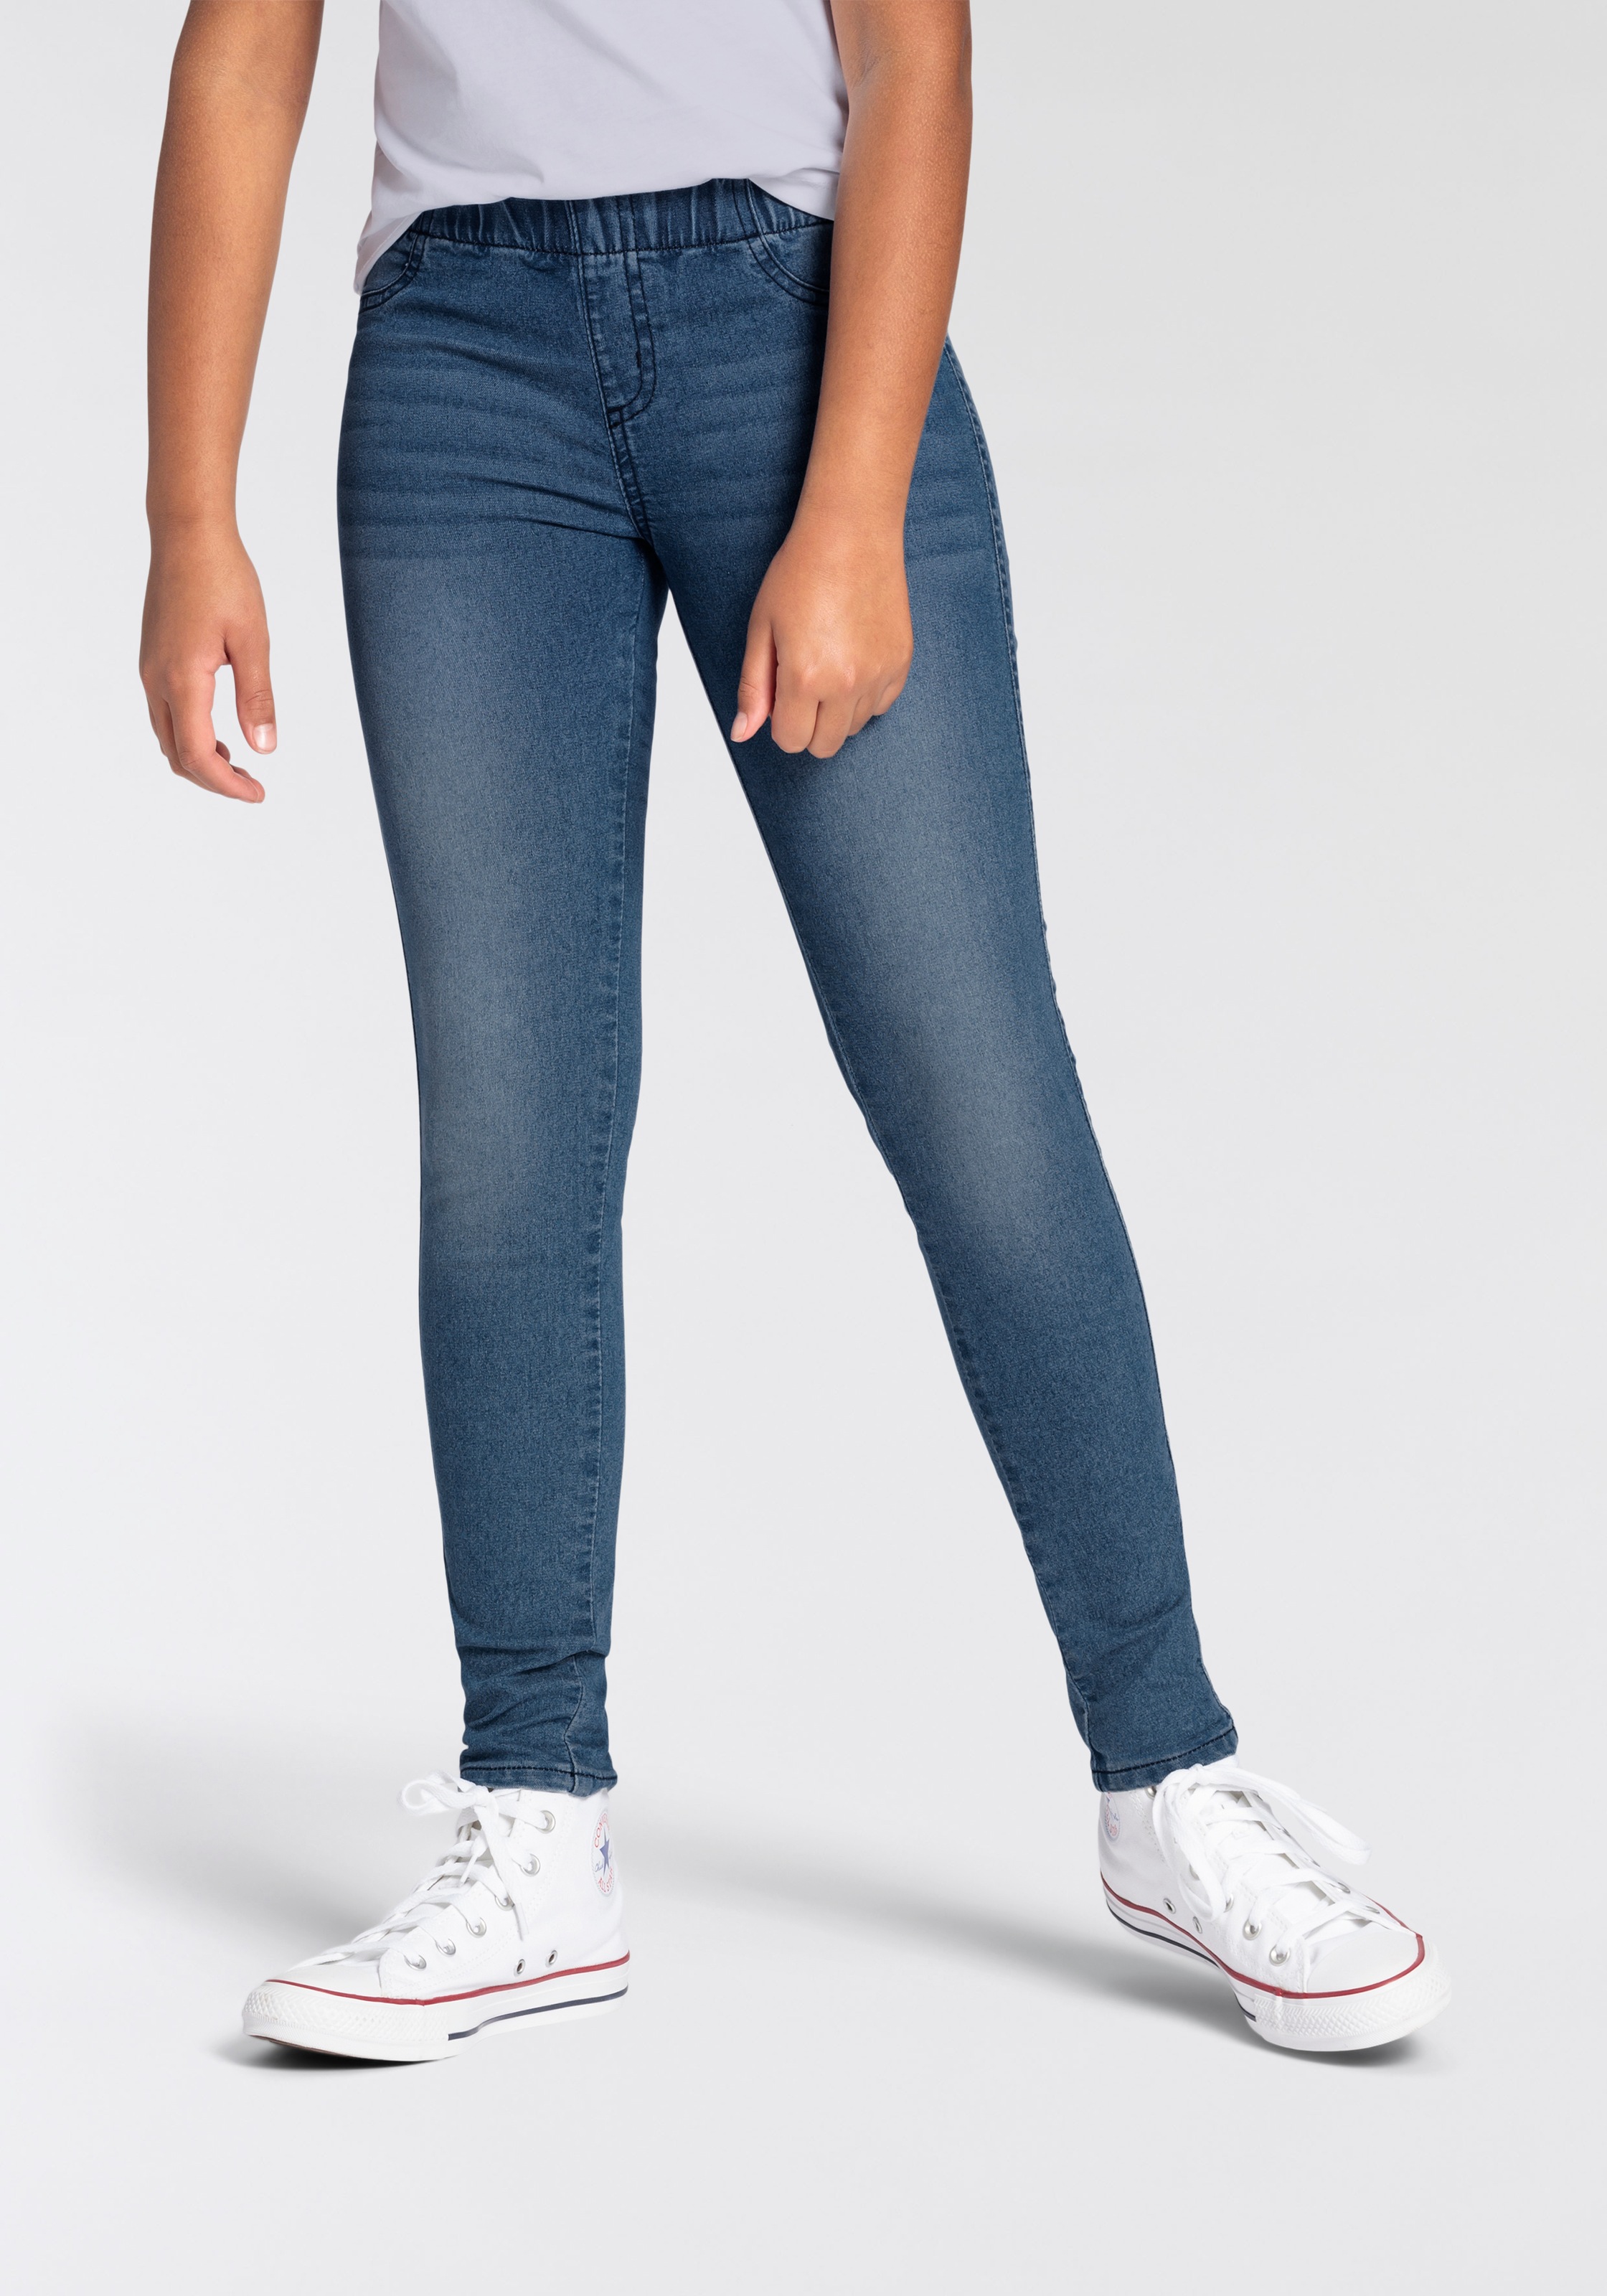 DELMAO Mädchen« bestellen online Skinny-fit-Jeans »für